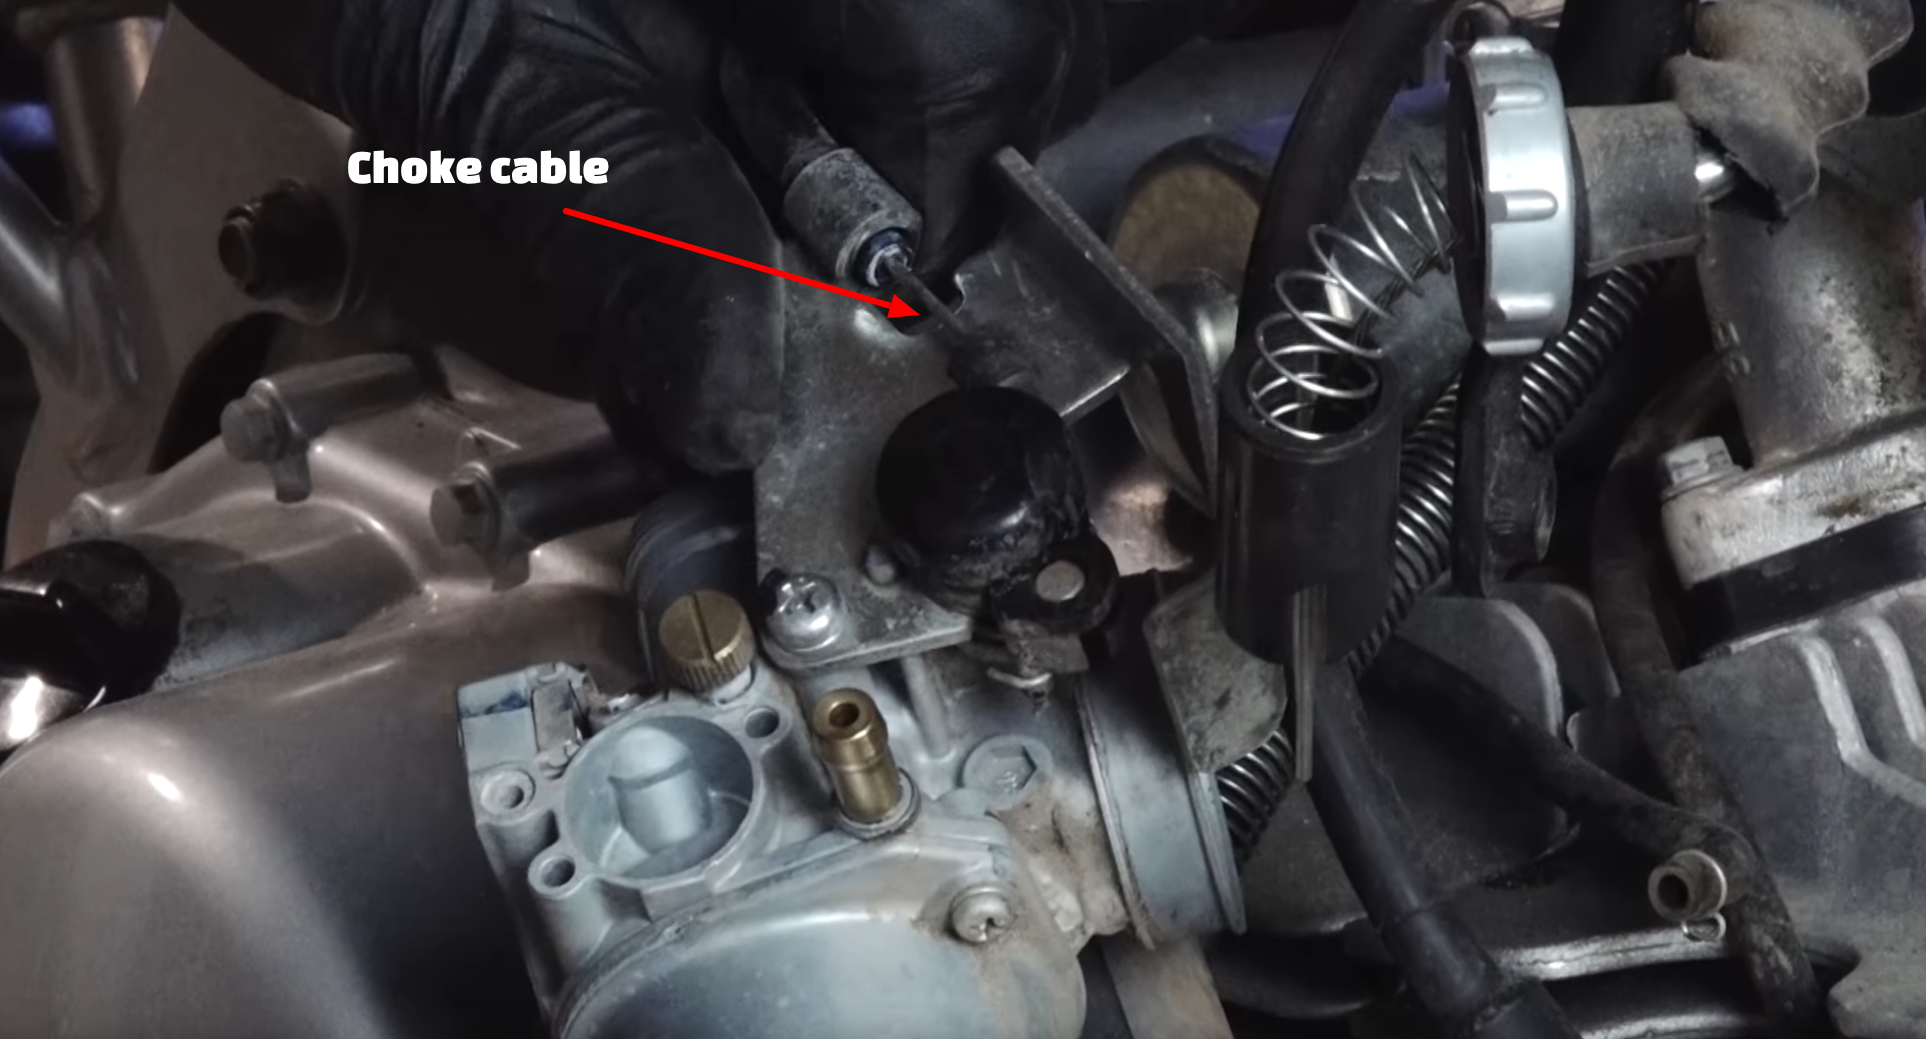 How to Clean and Rebuild Kawasaki Carburetor | Partzilla.com